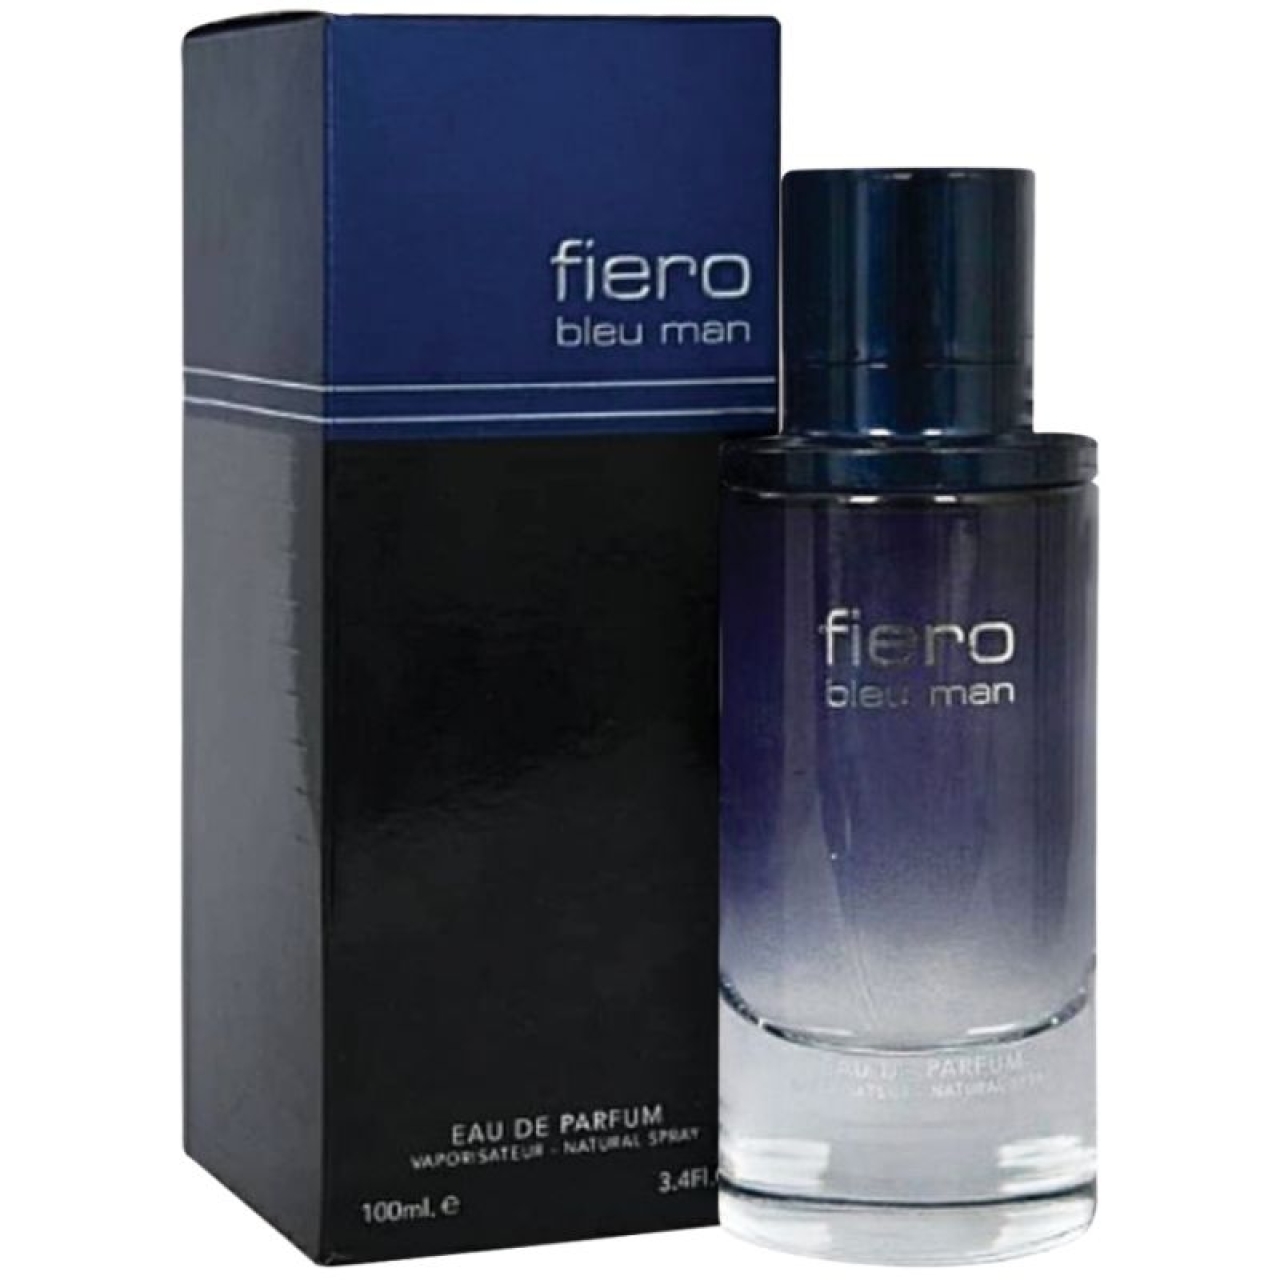 ادو پرفیوم مردانه فراگرنس ورد مدل Fiero Blue Man حجم 100 میل